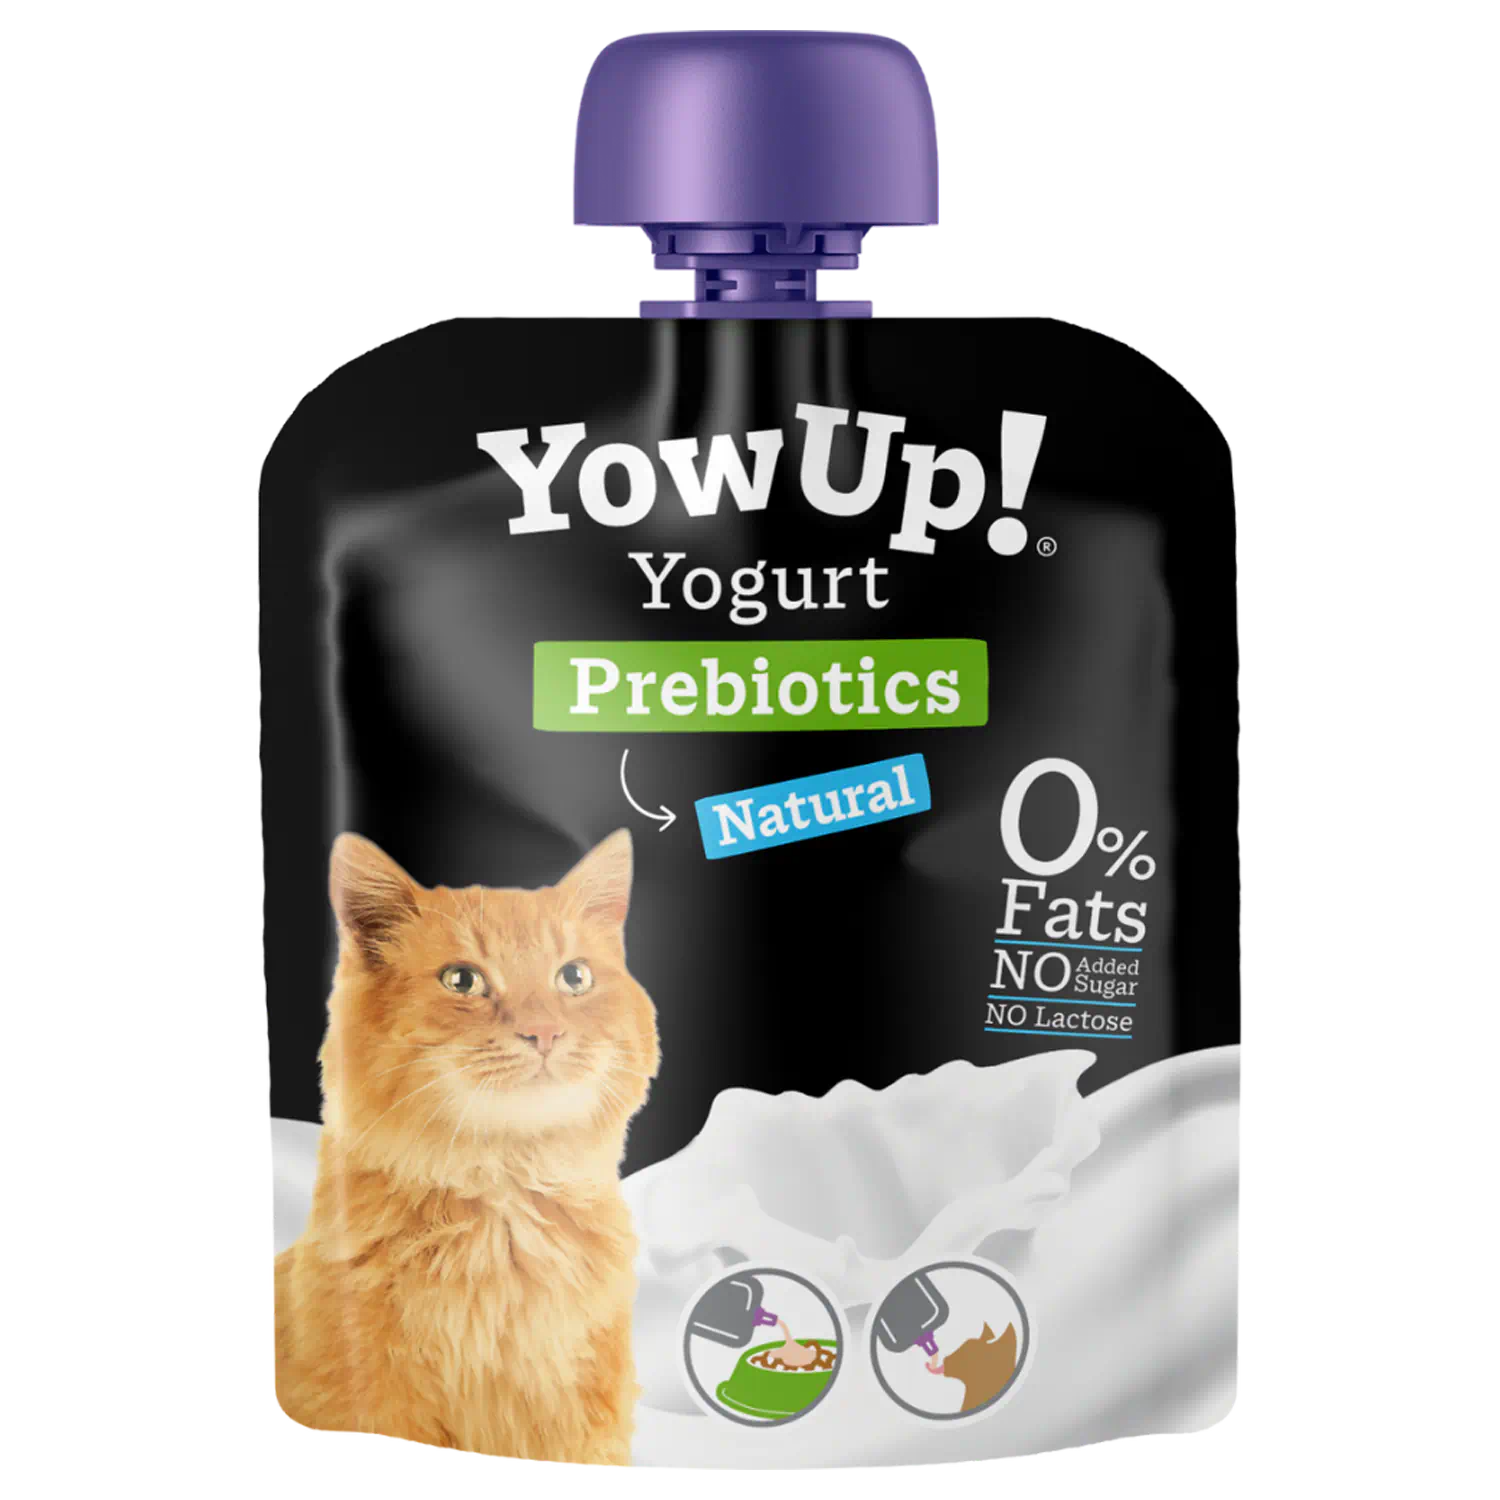 YowUp Yogurt Gatto Probiotics